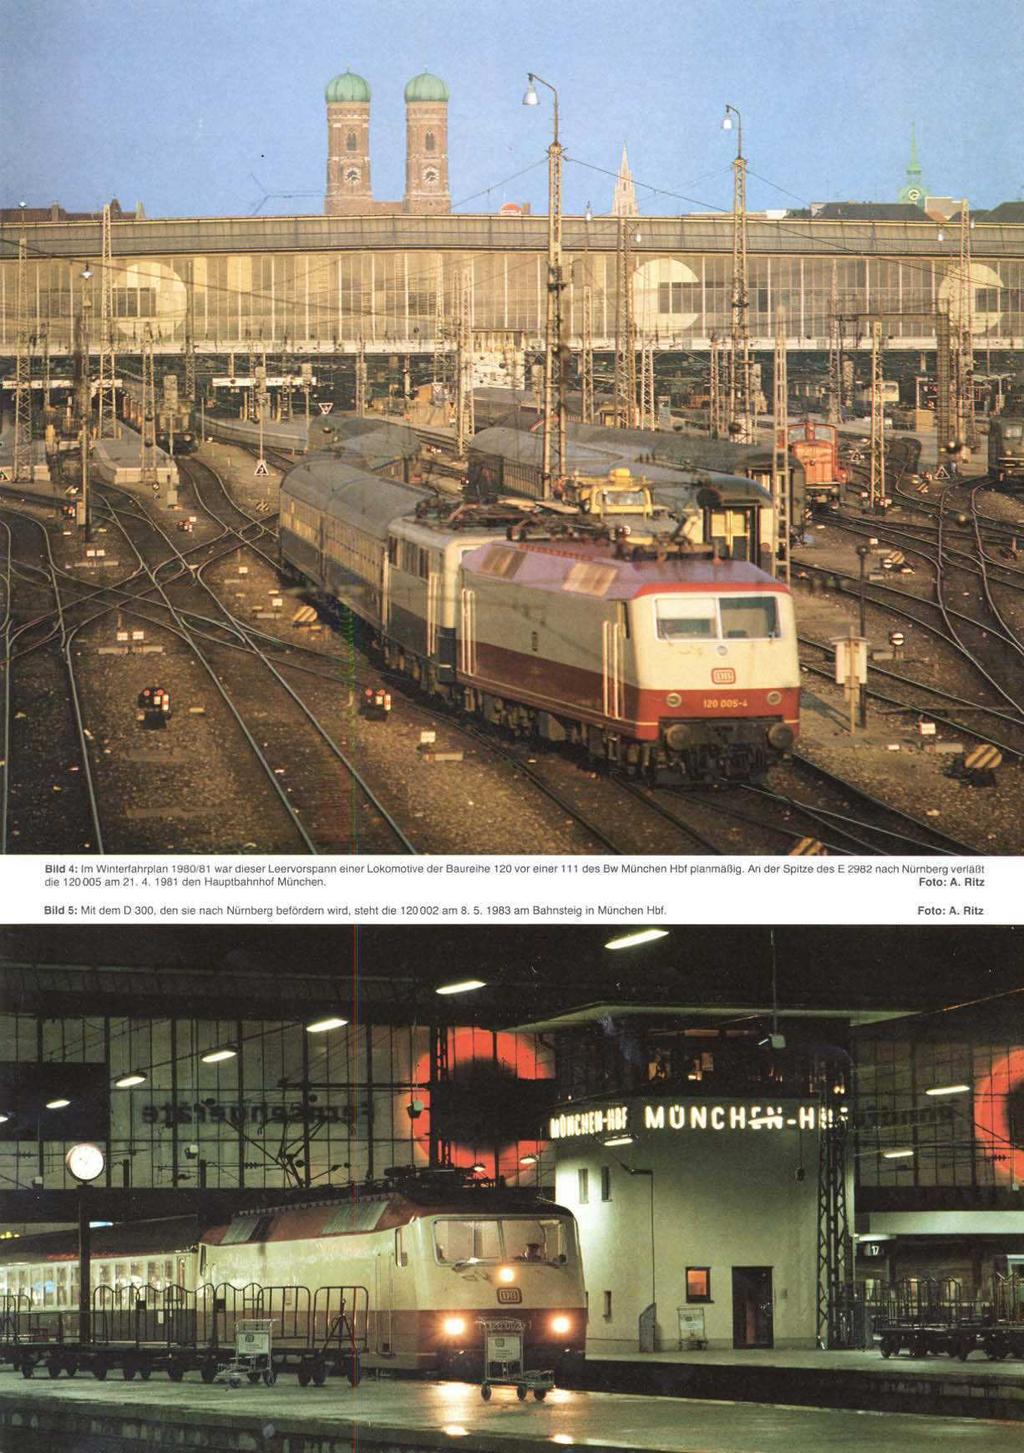 Bild 4: Im Wmteriahrplan 1980181 war dleser Leervorspann Einer Lokomotive der BaureIhe 120 vor Einer 111 des BW Munchen Hbf planmaßlg An der Spitze des E 2982 nach Nurnberg Foto: A.